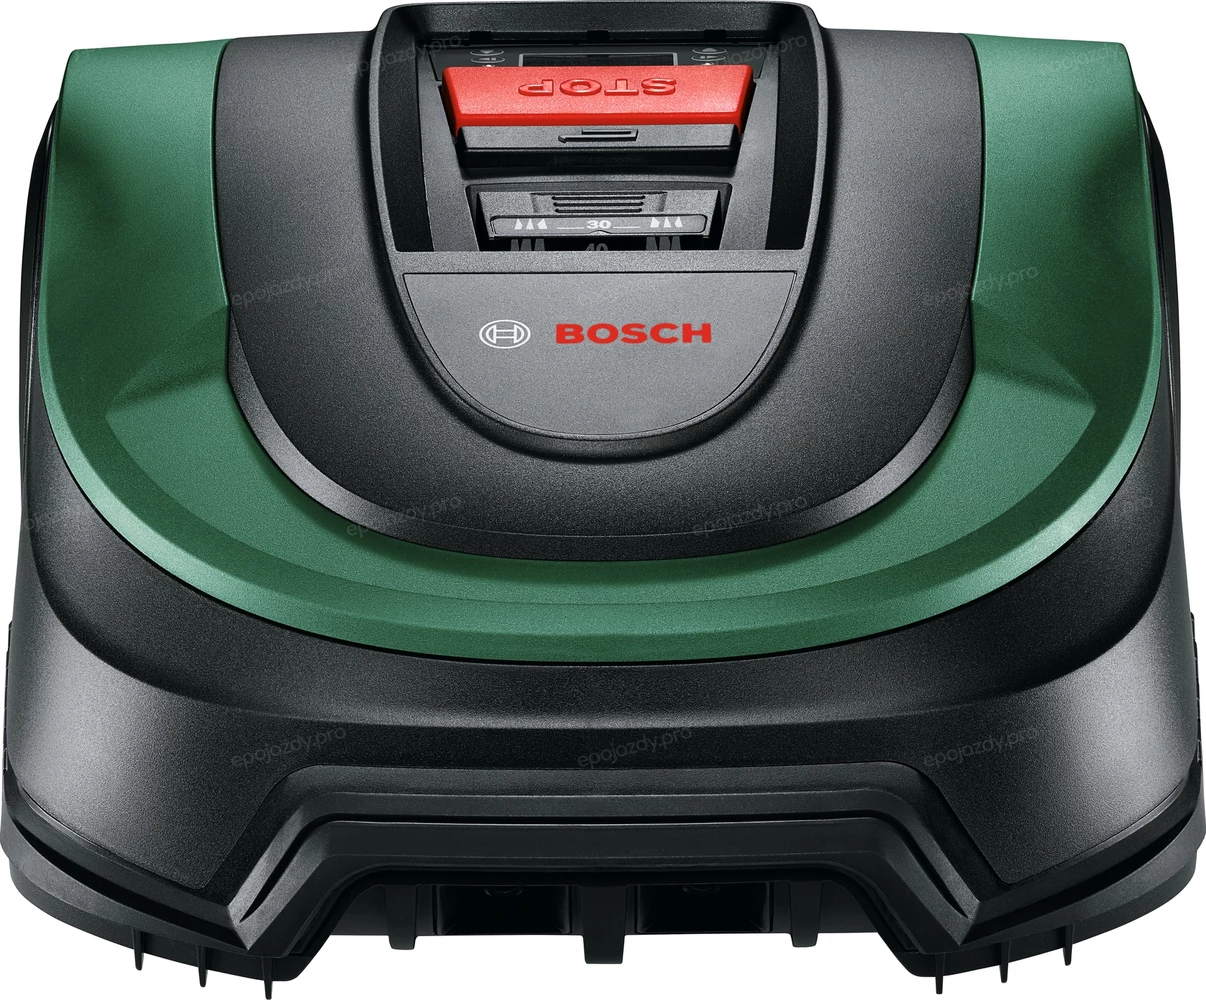 Robot koszący Bosch Indego S 500 samodzielnie opracowuje kalendarz koszenia